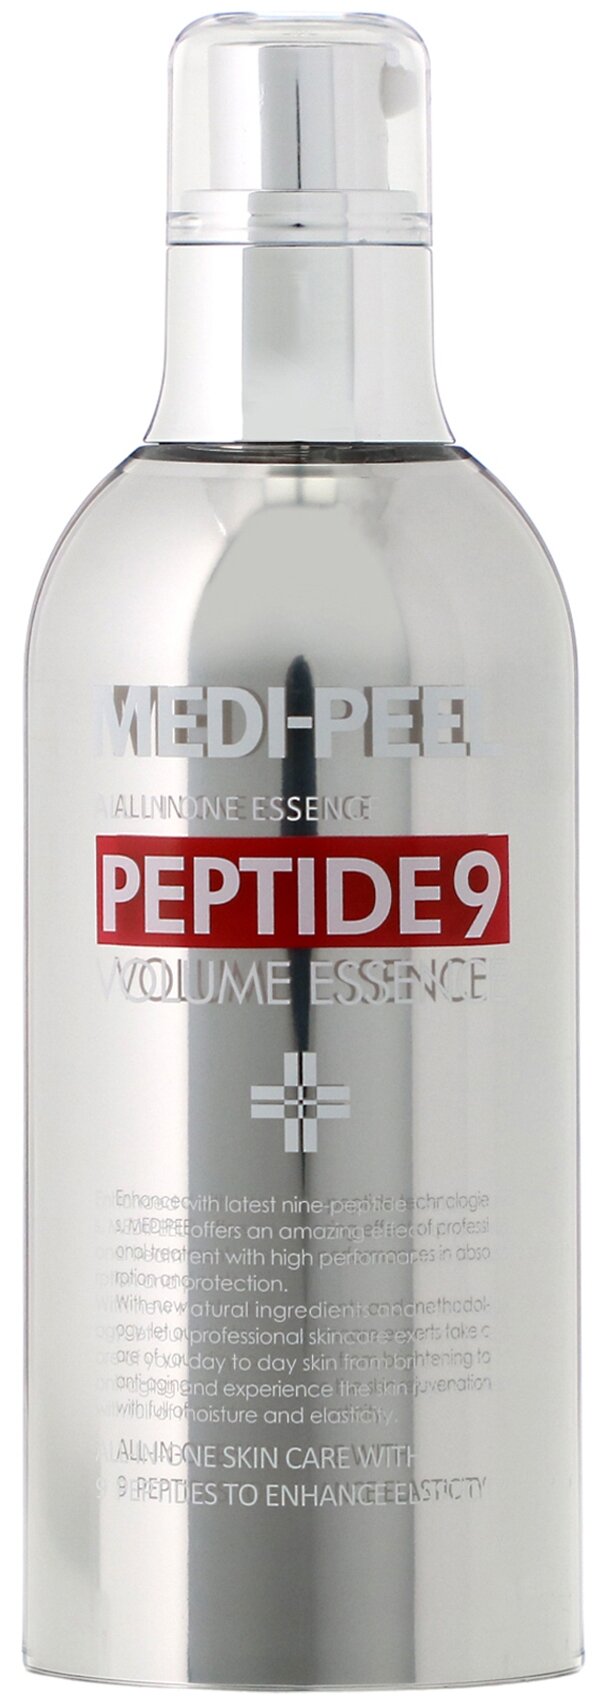 MEDI-PEEL Кислородная эссенция с пептидным комплексом MEDI-PEEL Peptide 9 Volume Essence, 100 мл.